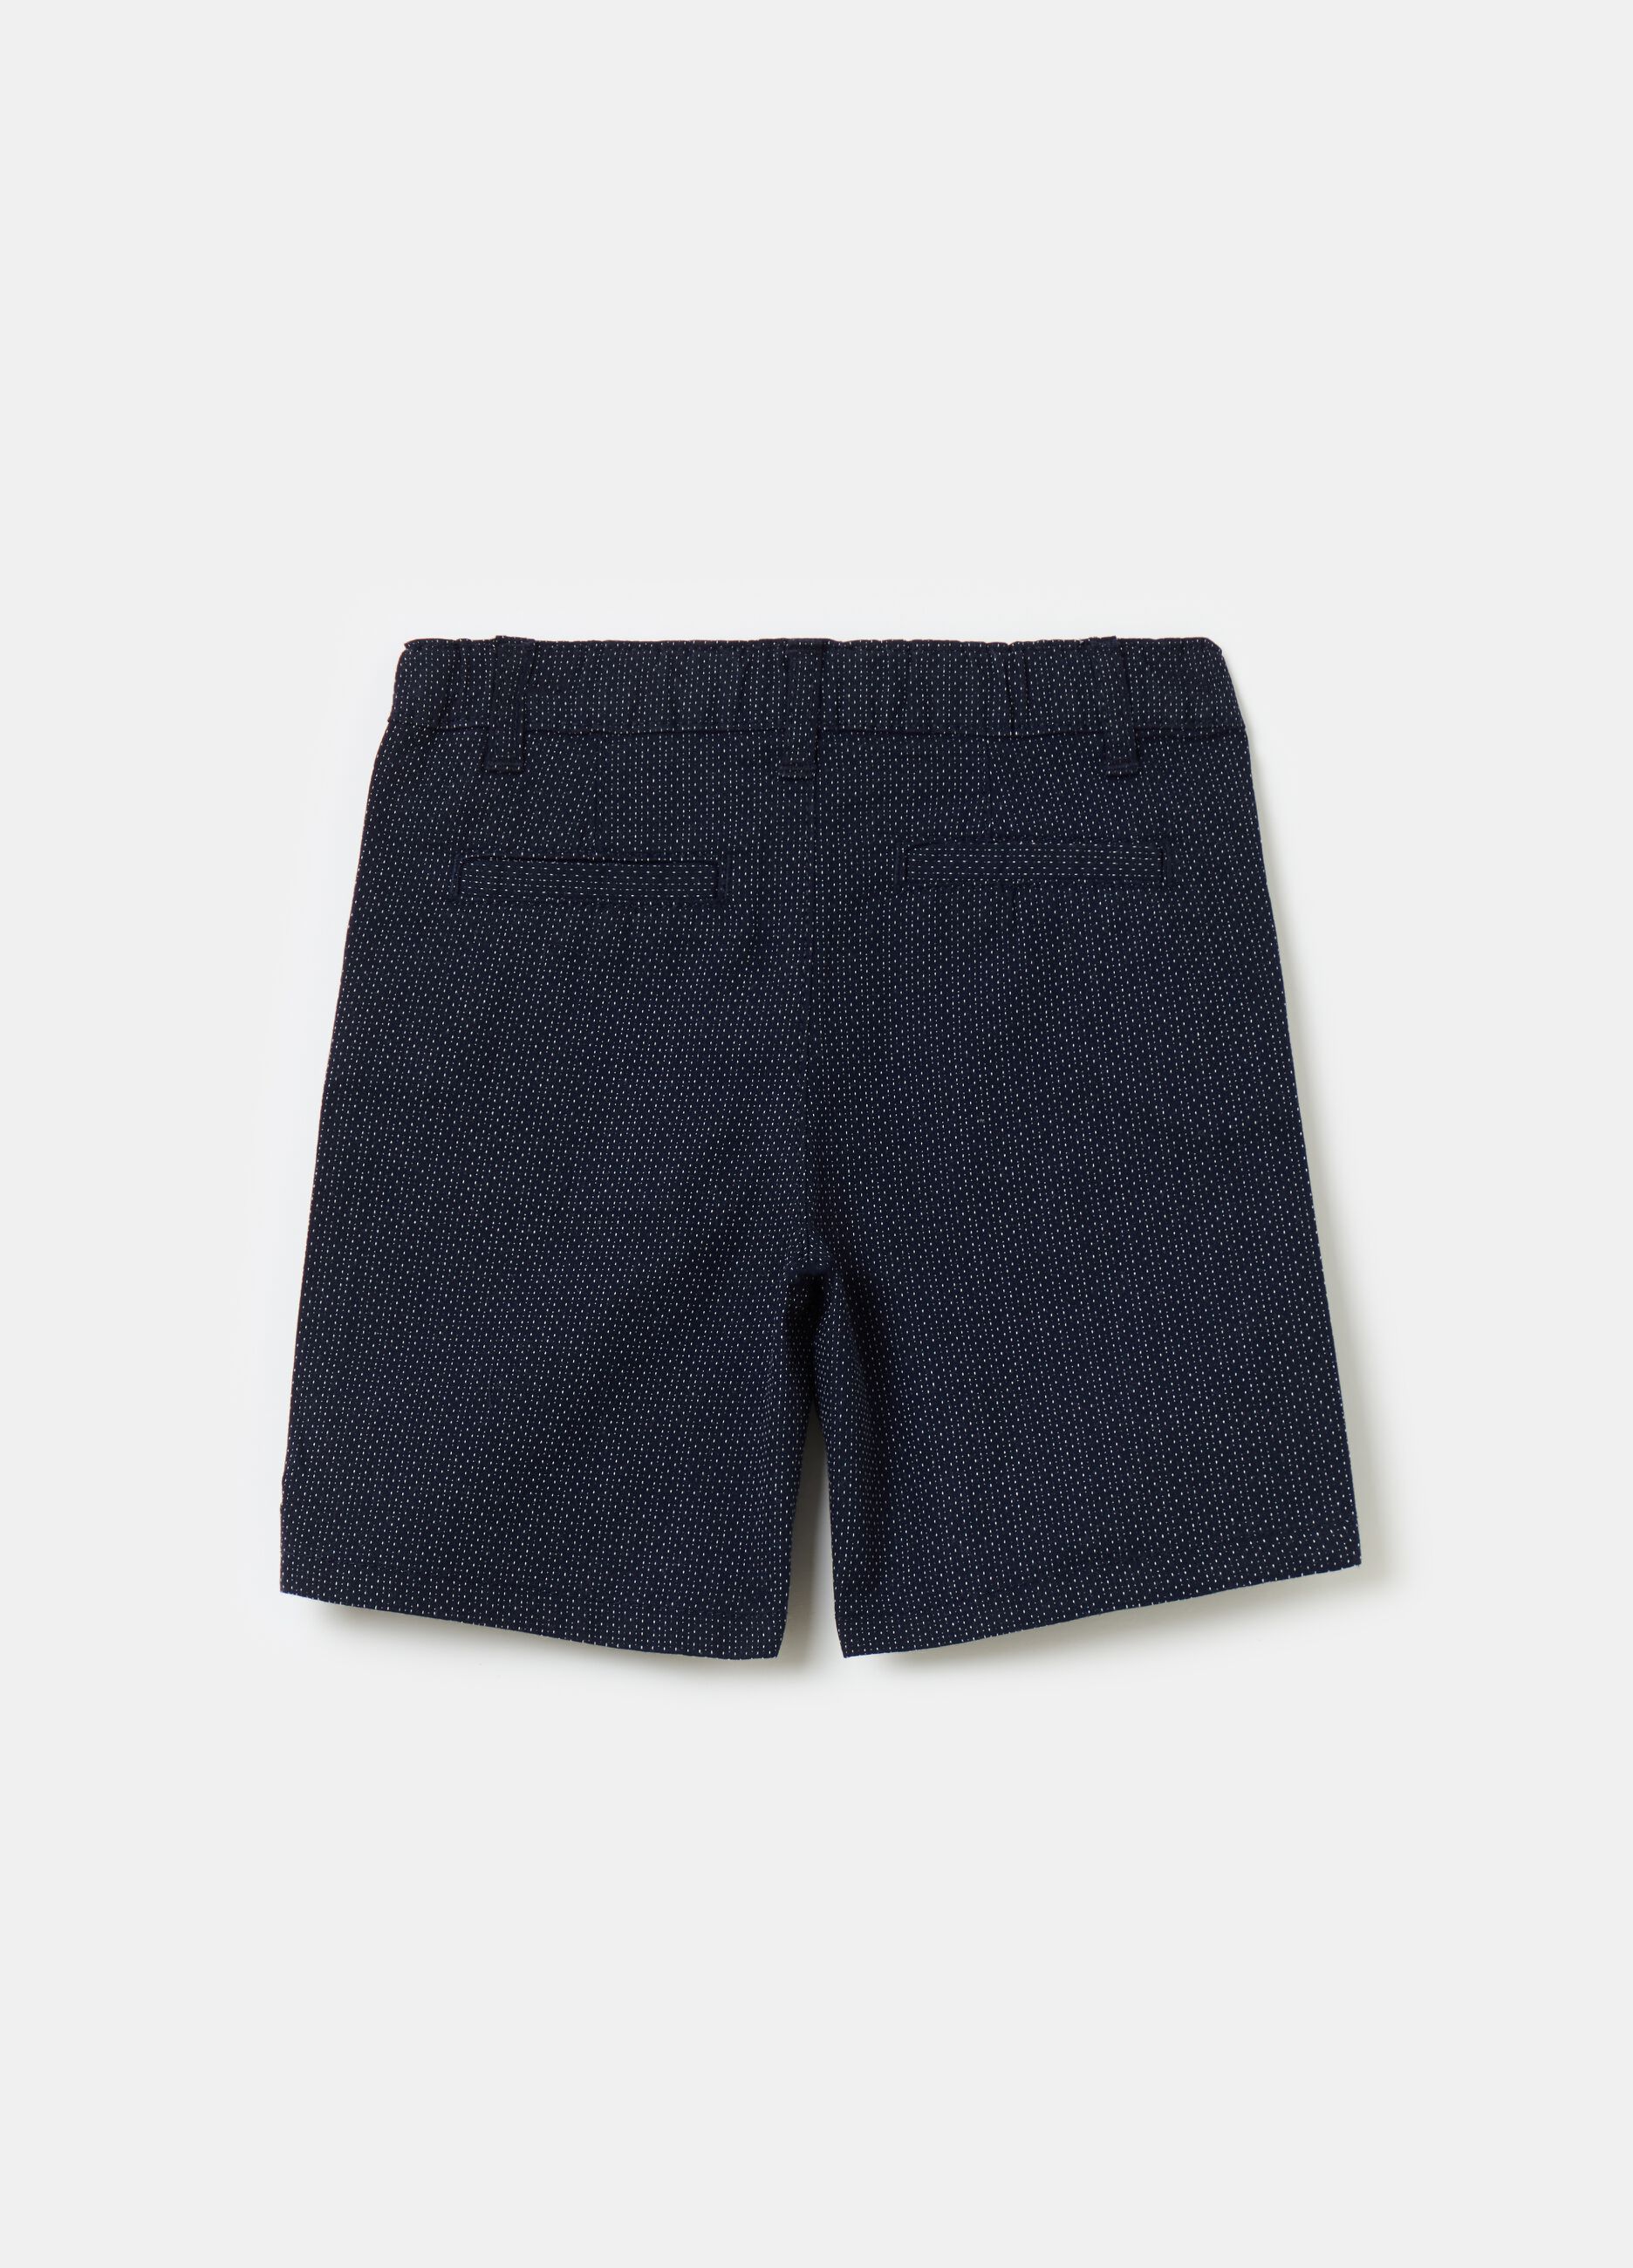 Dobby cotton Bermuda shorts